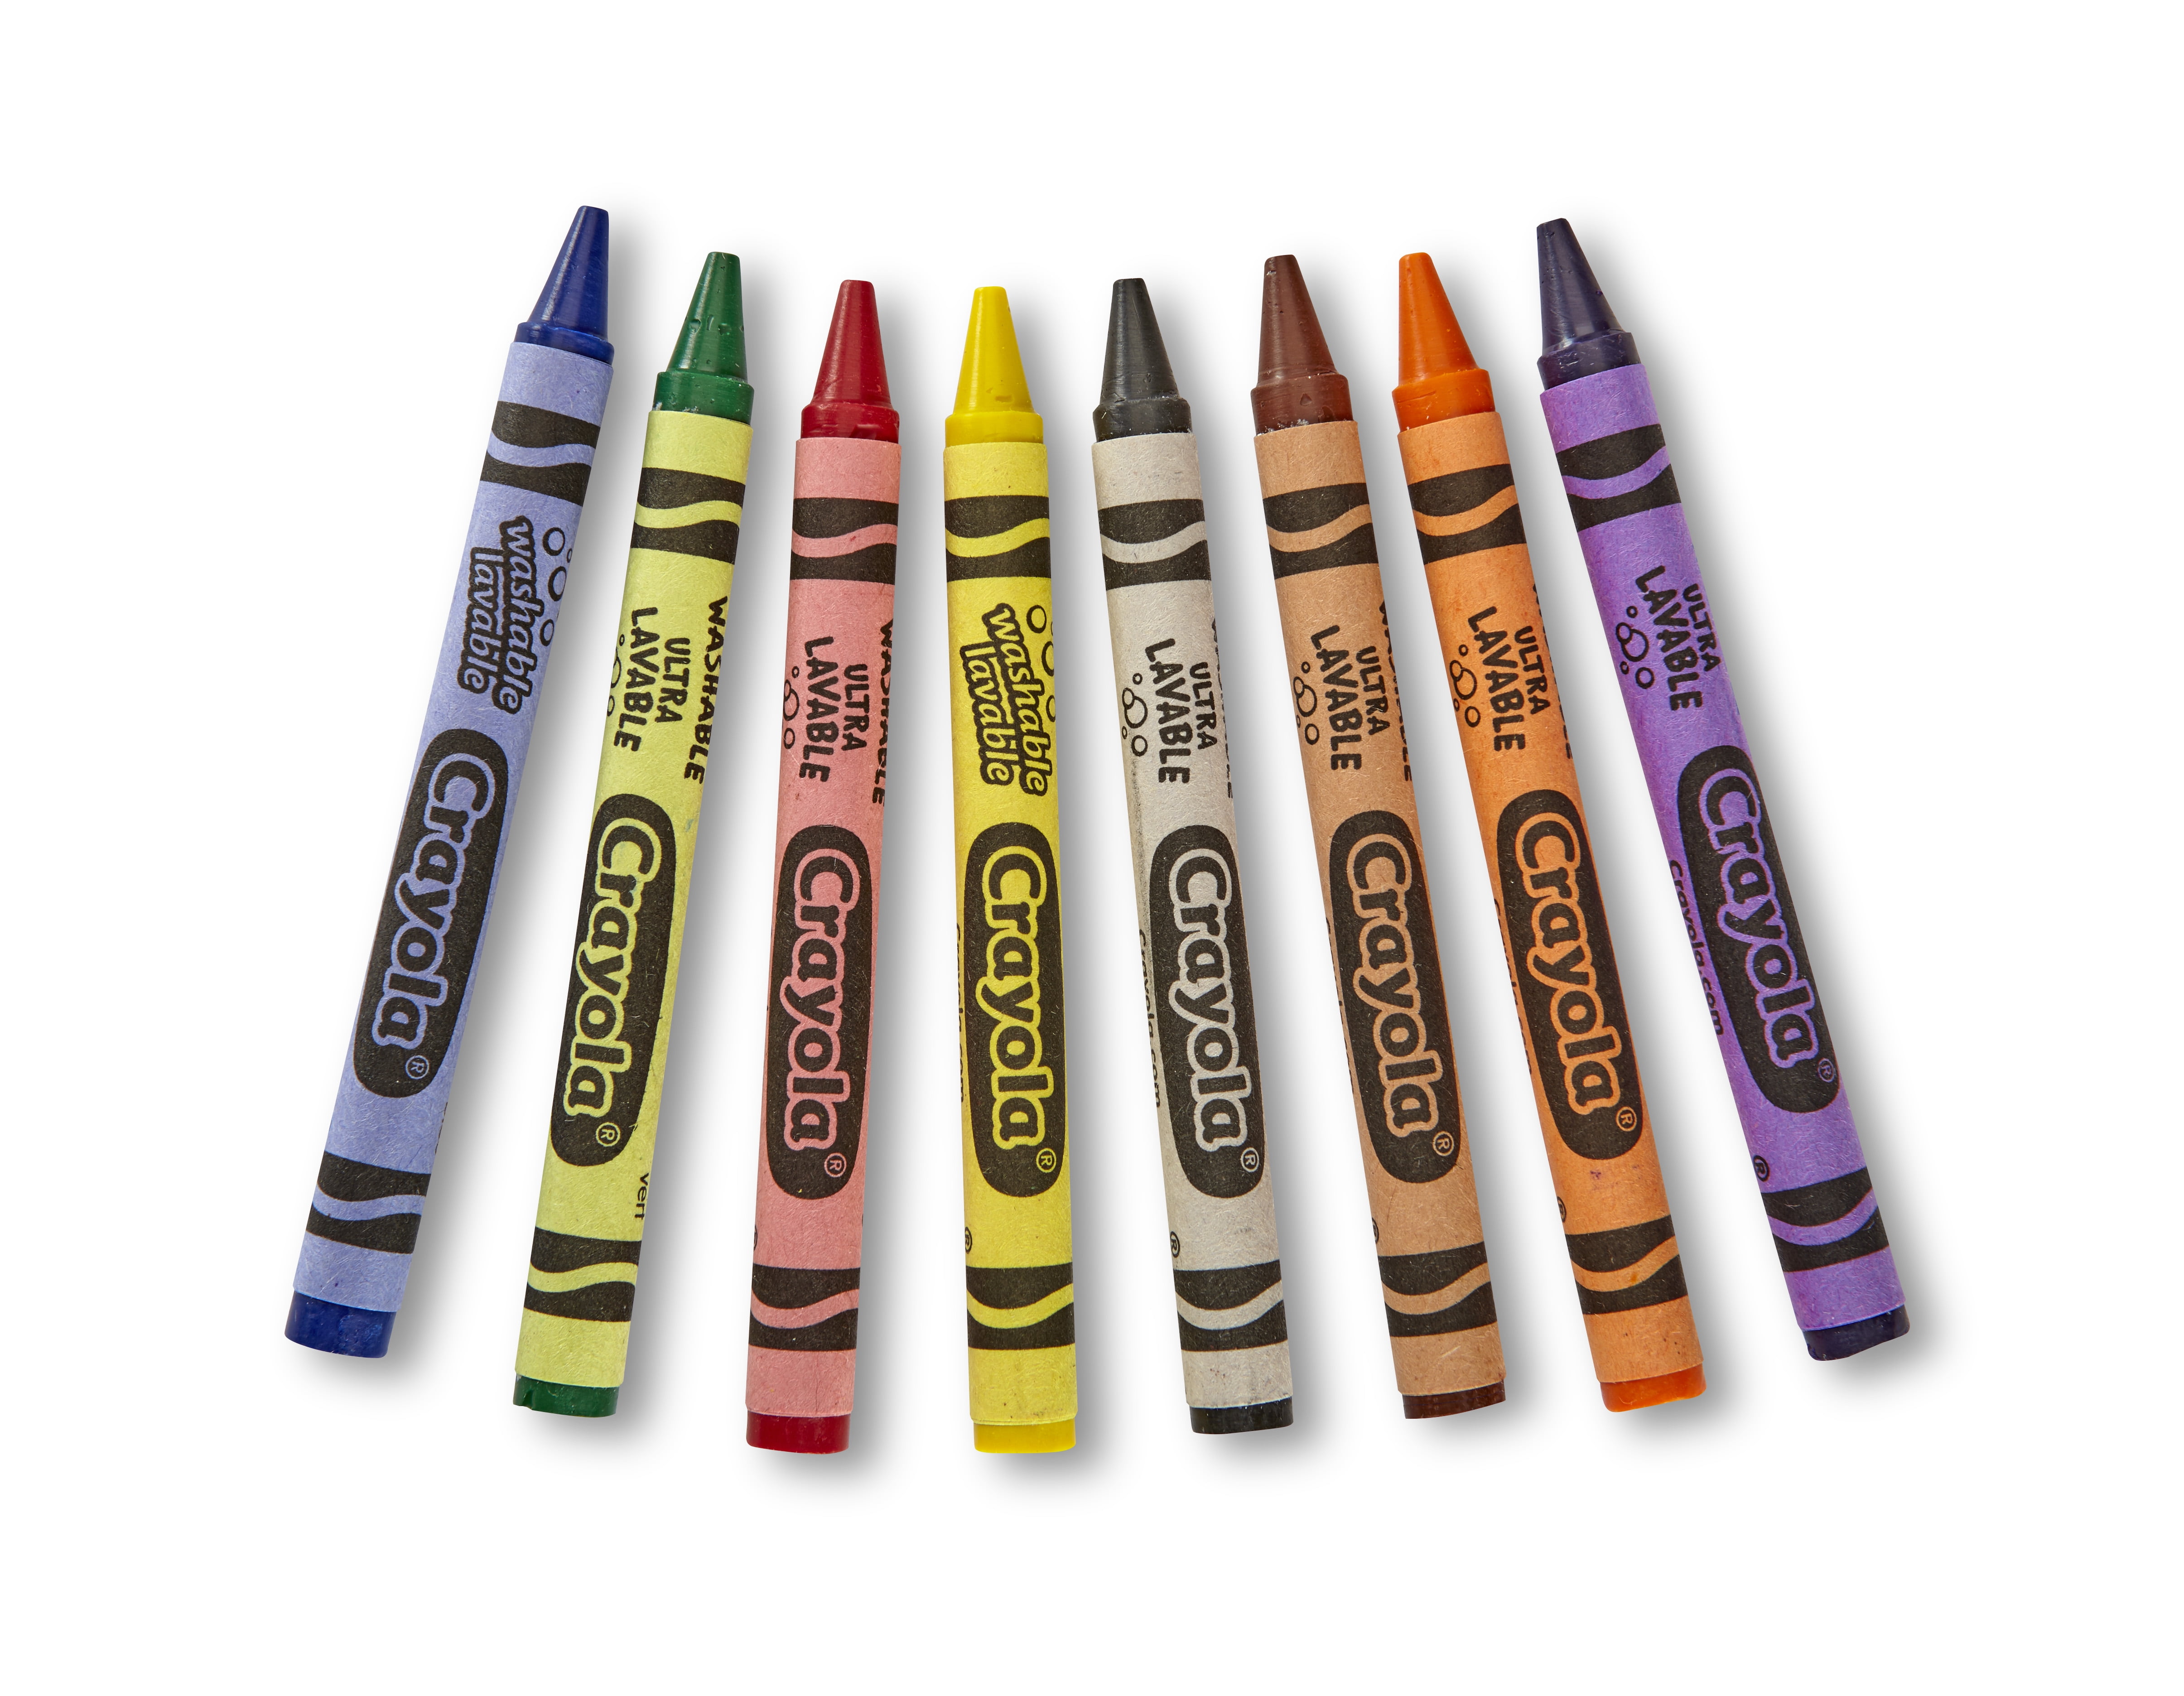 Crayola Crayons 8 Big Washable Crayons - One crayon is broken UK